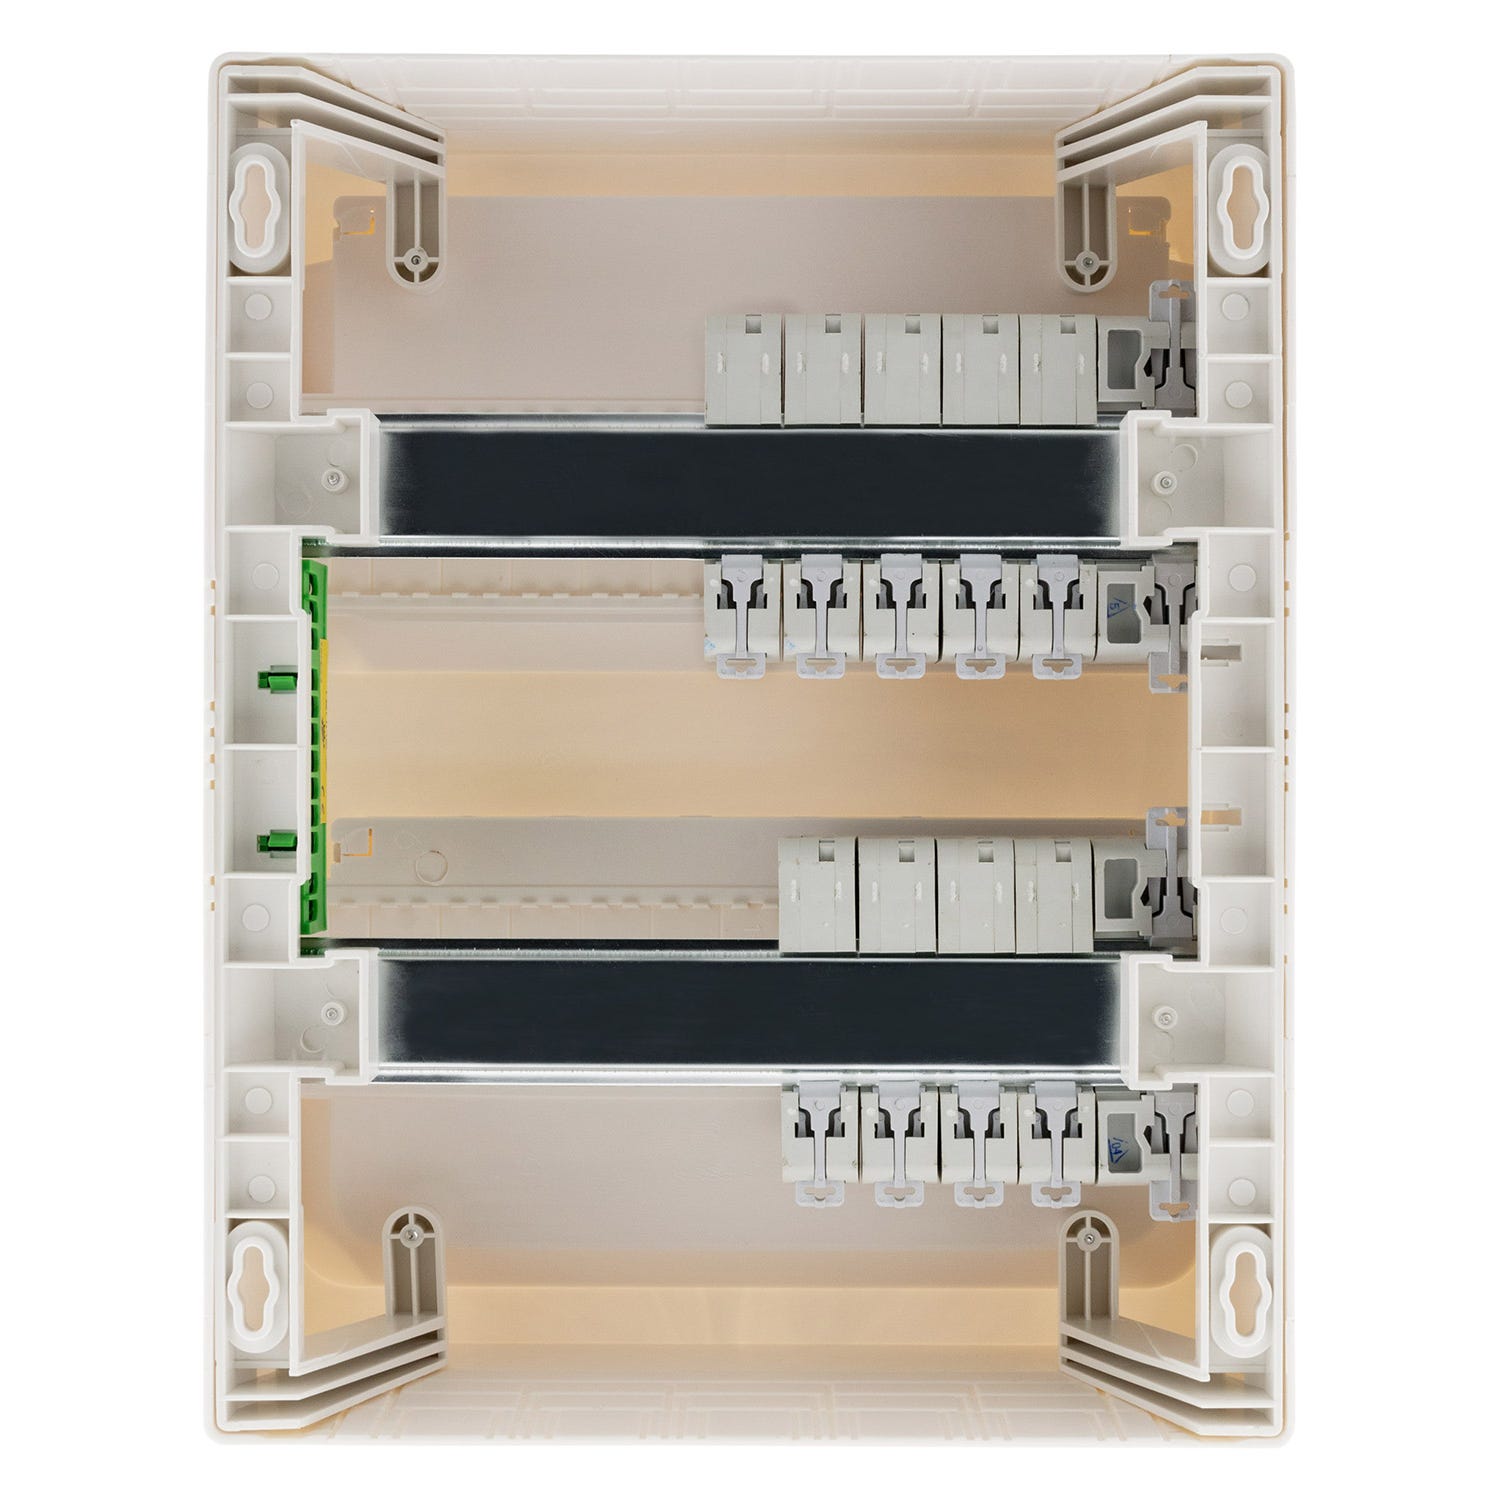 Coffret T3 26 modules Blanc équipé de 9 disjoncteurs et 2 inter. diff. livré avec accessoires - Zenitech 2